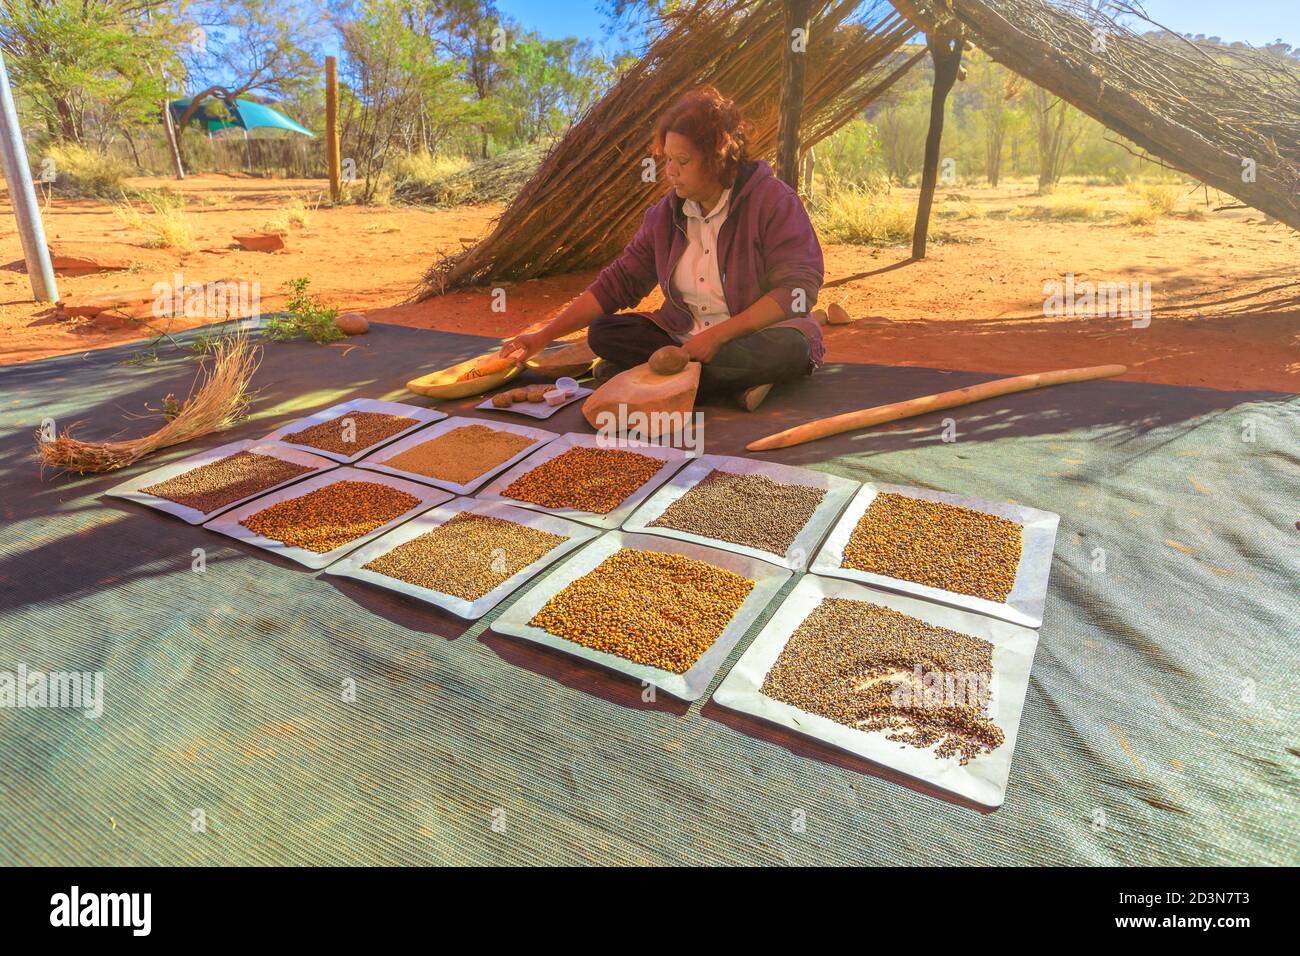 Kings Creek, Northern Territory, Australien - Aug 21,2019: Australische Aborigine-Frau zeigt die traditionellen Buschsamen, die für Nahrung und Landwirtschaft verwendet werden Stockfoto